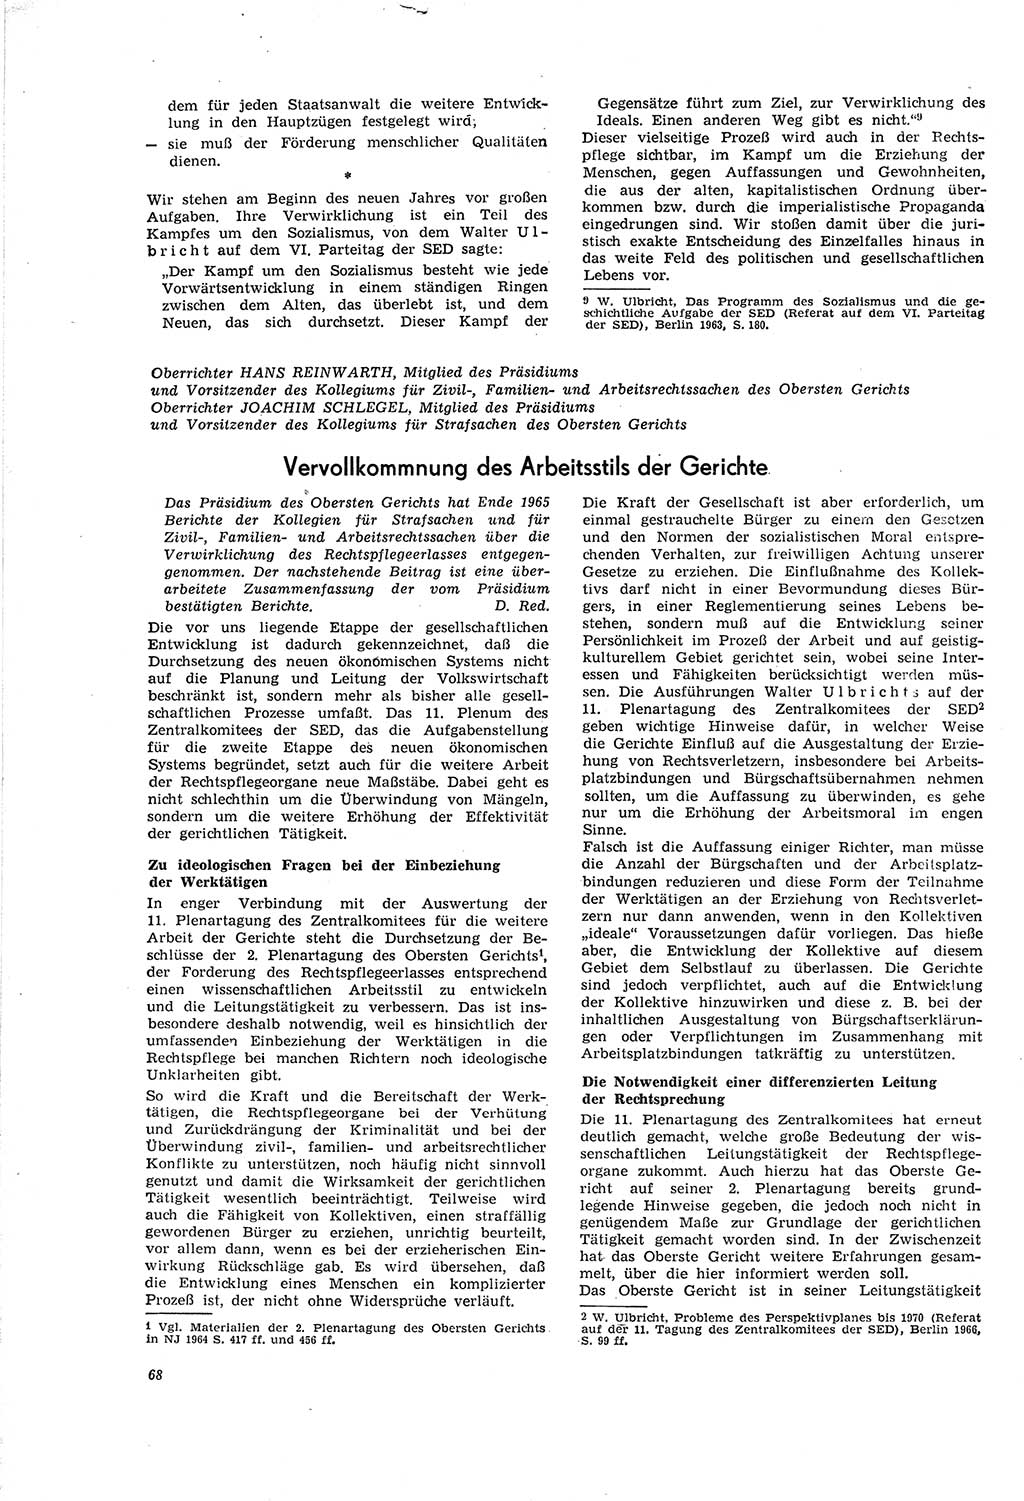 Neue Justiz (NJ), Zeitschrift für Recht und Rechtswissenschaft [Deutsche Demokratische Republik (DDR)], 20. Jahrgang 1966, Seite 68 (NJ DDR 1966, S. 68)